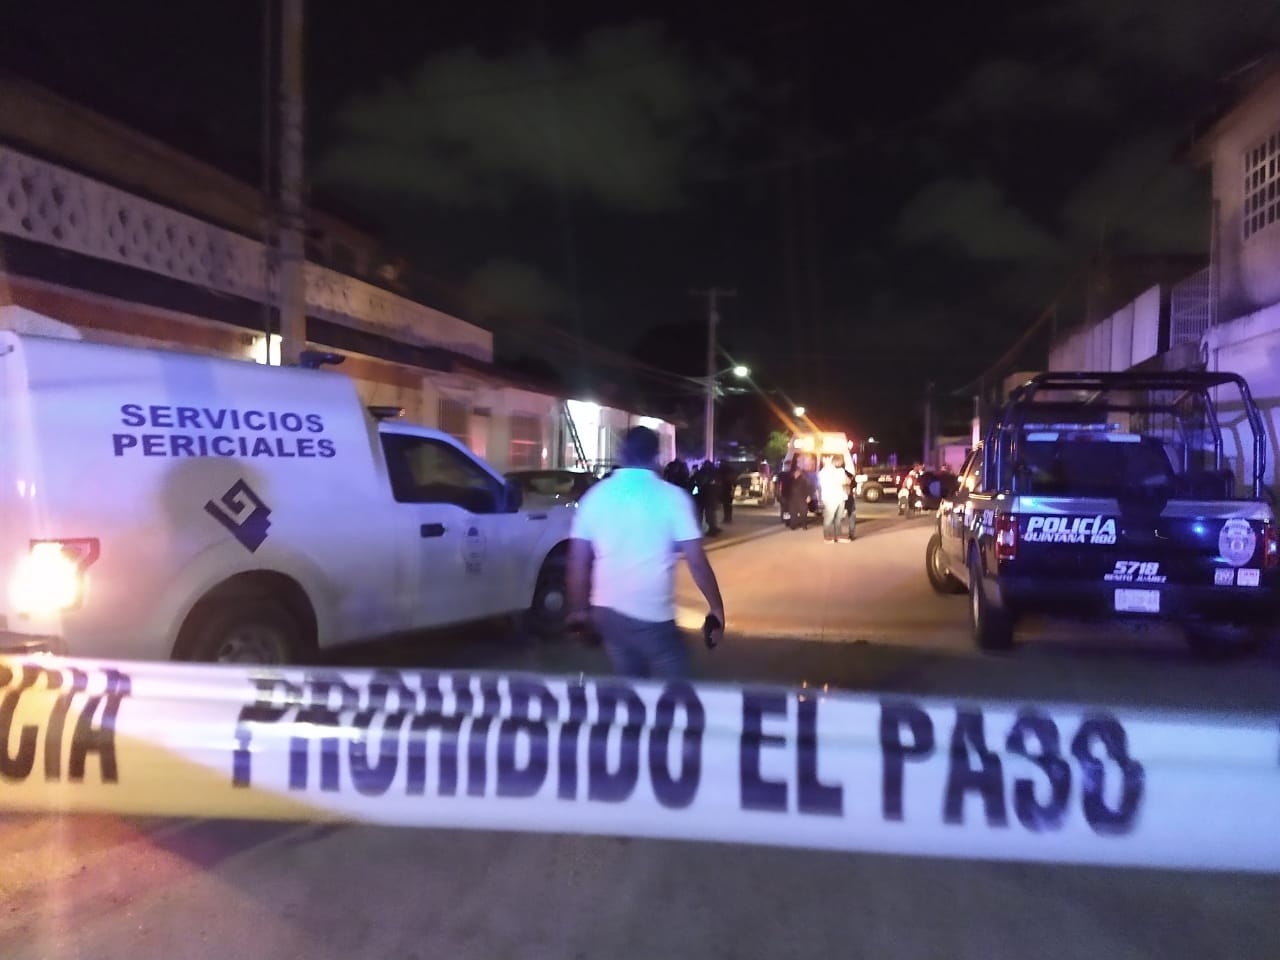 La llamada de auxilio generó una fuerte movilización por parte de elementos de la Policía Quintana Roo Ministerial y la Guardia Nacional